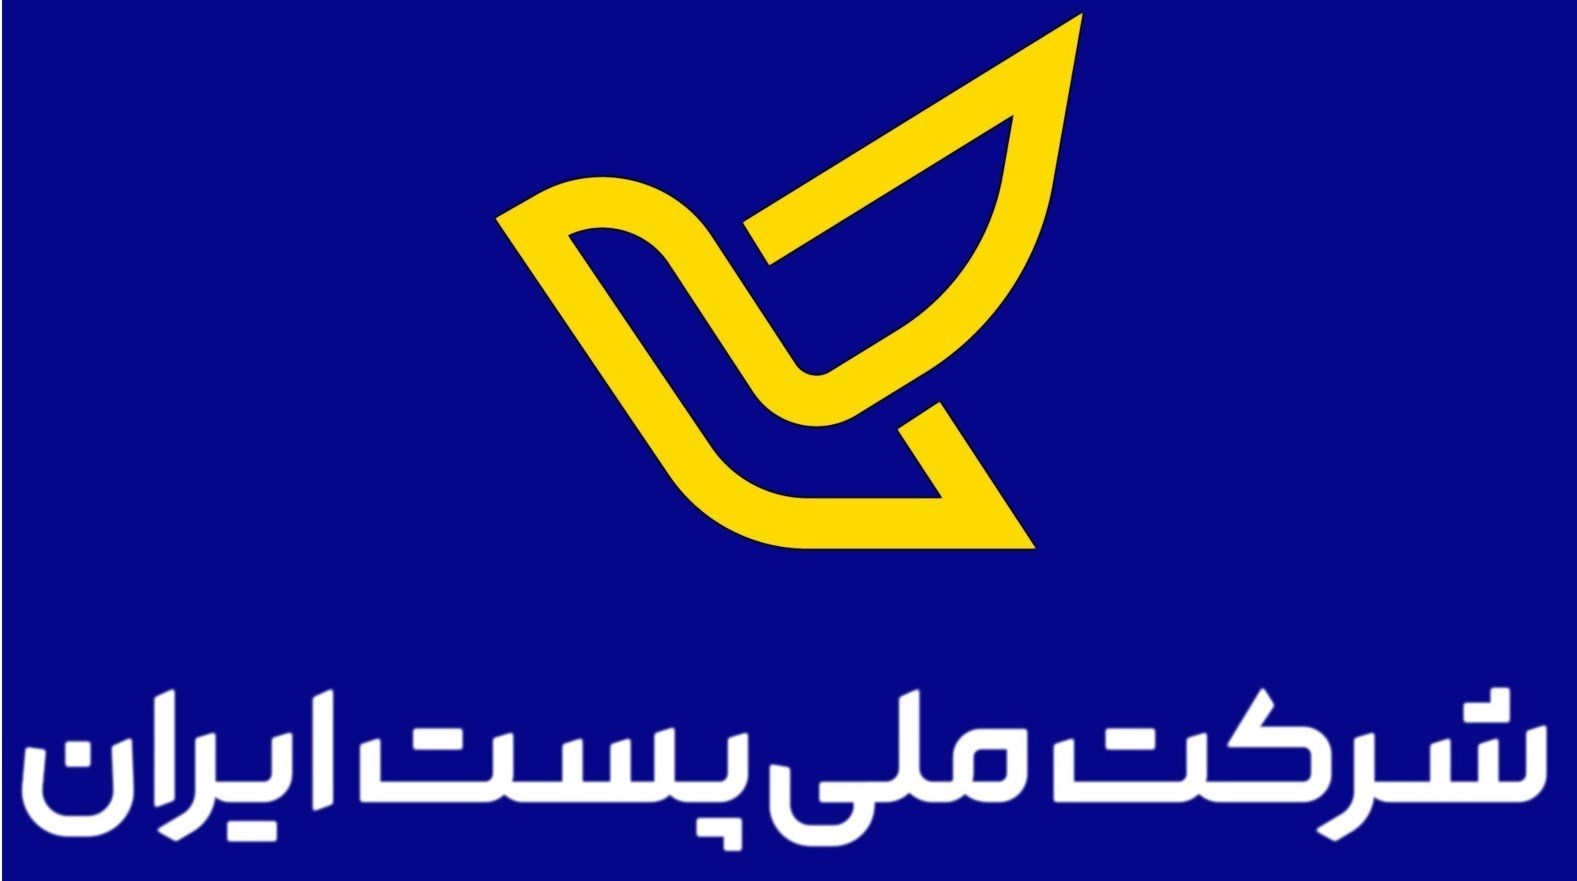 وزارت ارتباطات و فناوری اطلاعات جمهوری اسلامی ایران , 